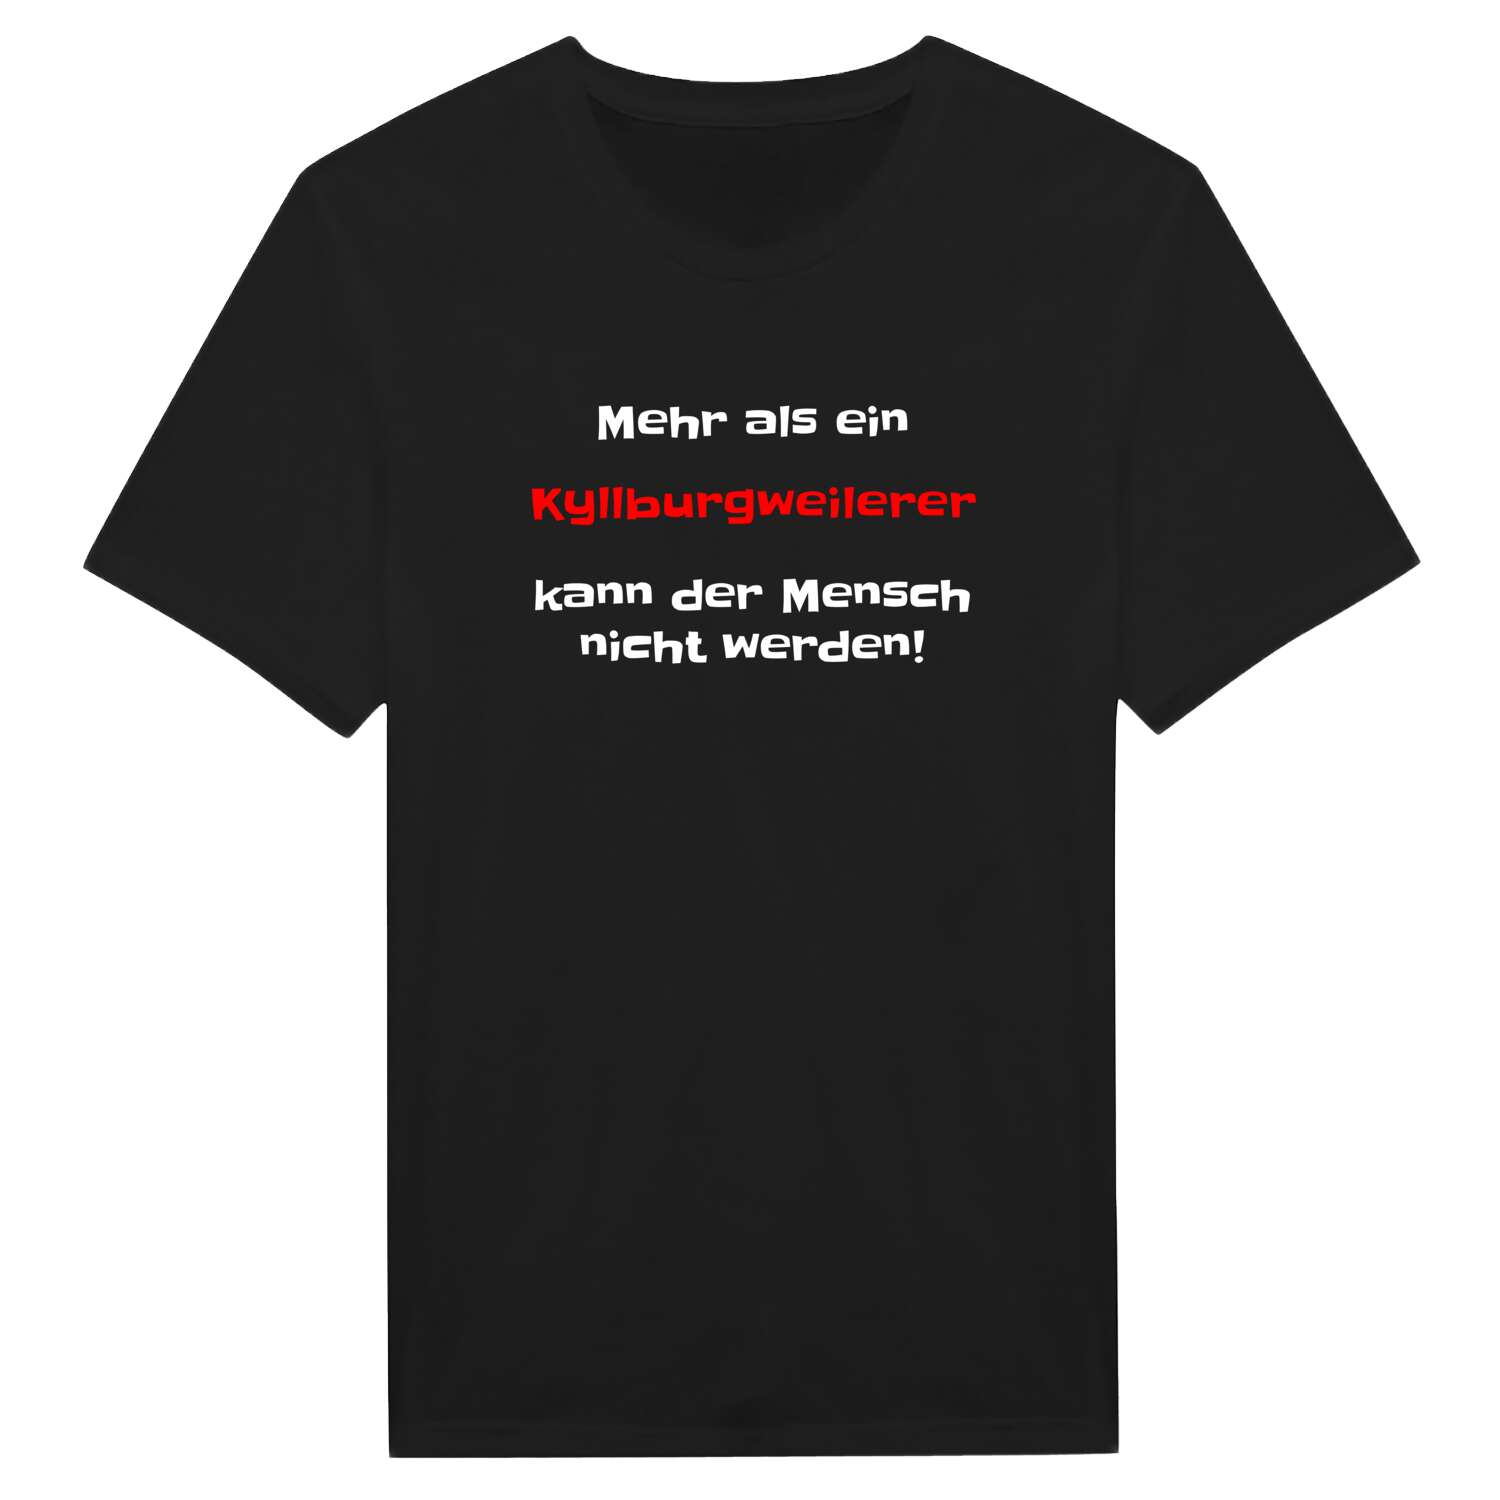 Kyllburgweiler T-Shirt »Mehr als ein«